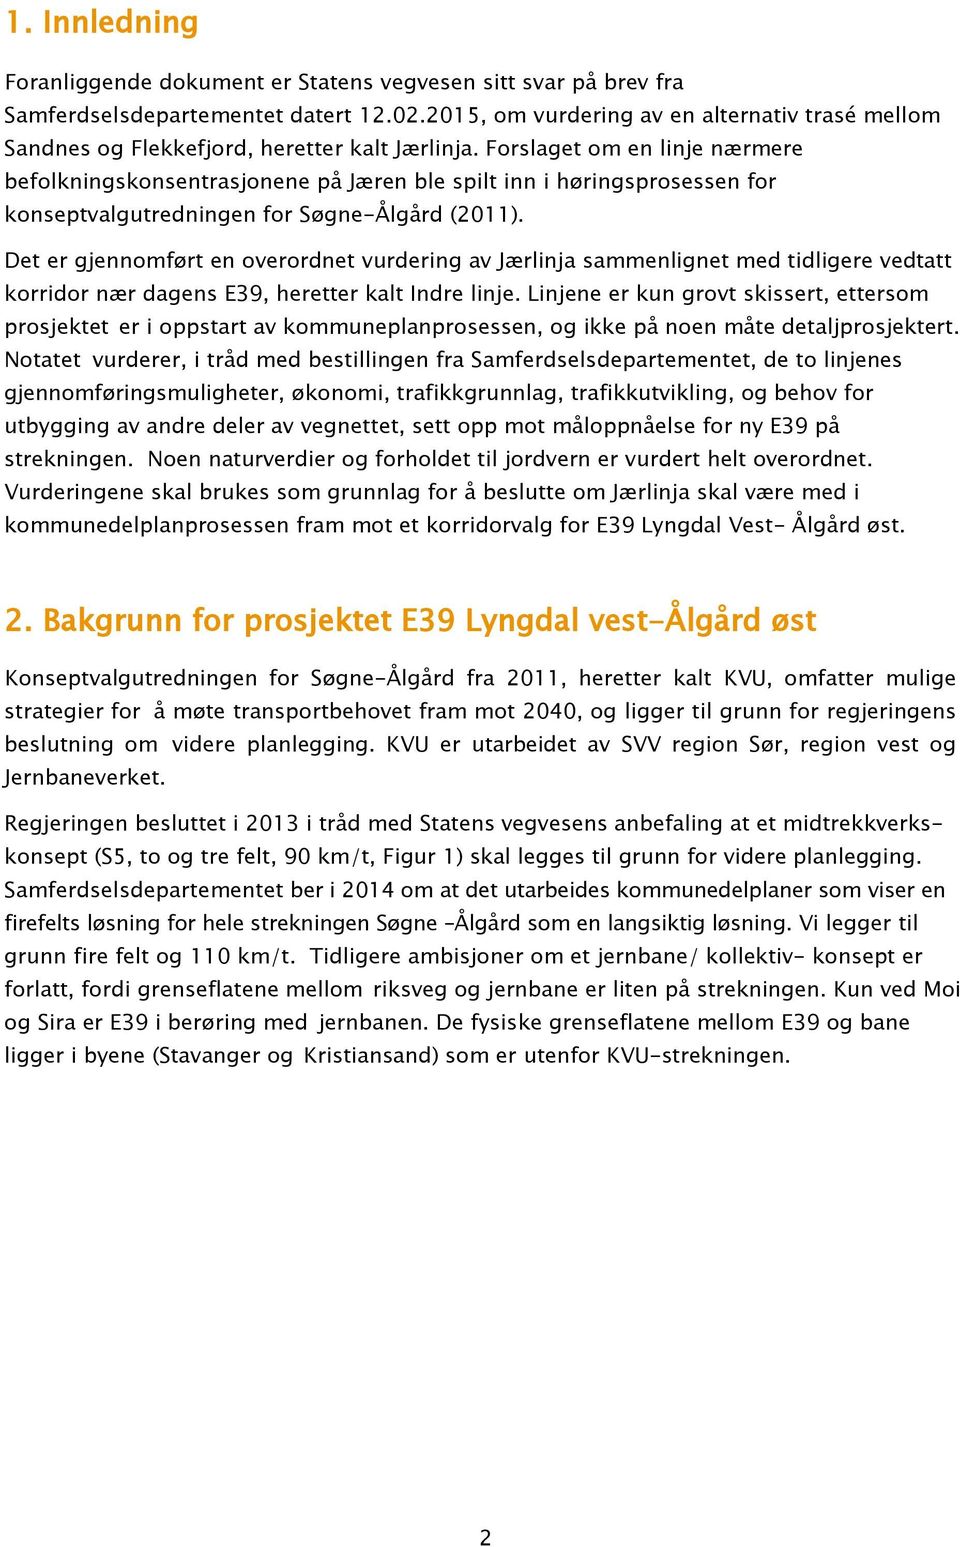 Forslaget om en linje nærmere befolkningskonsentrasjonene på Jæren ble spilt inn i høringsprosessen for konseptvalgutredningen for Søgne-Ålgård (2011).